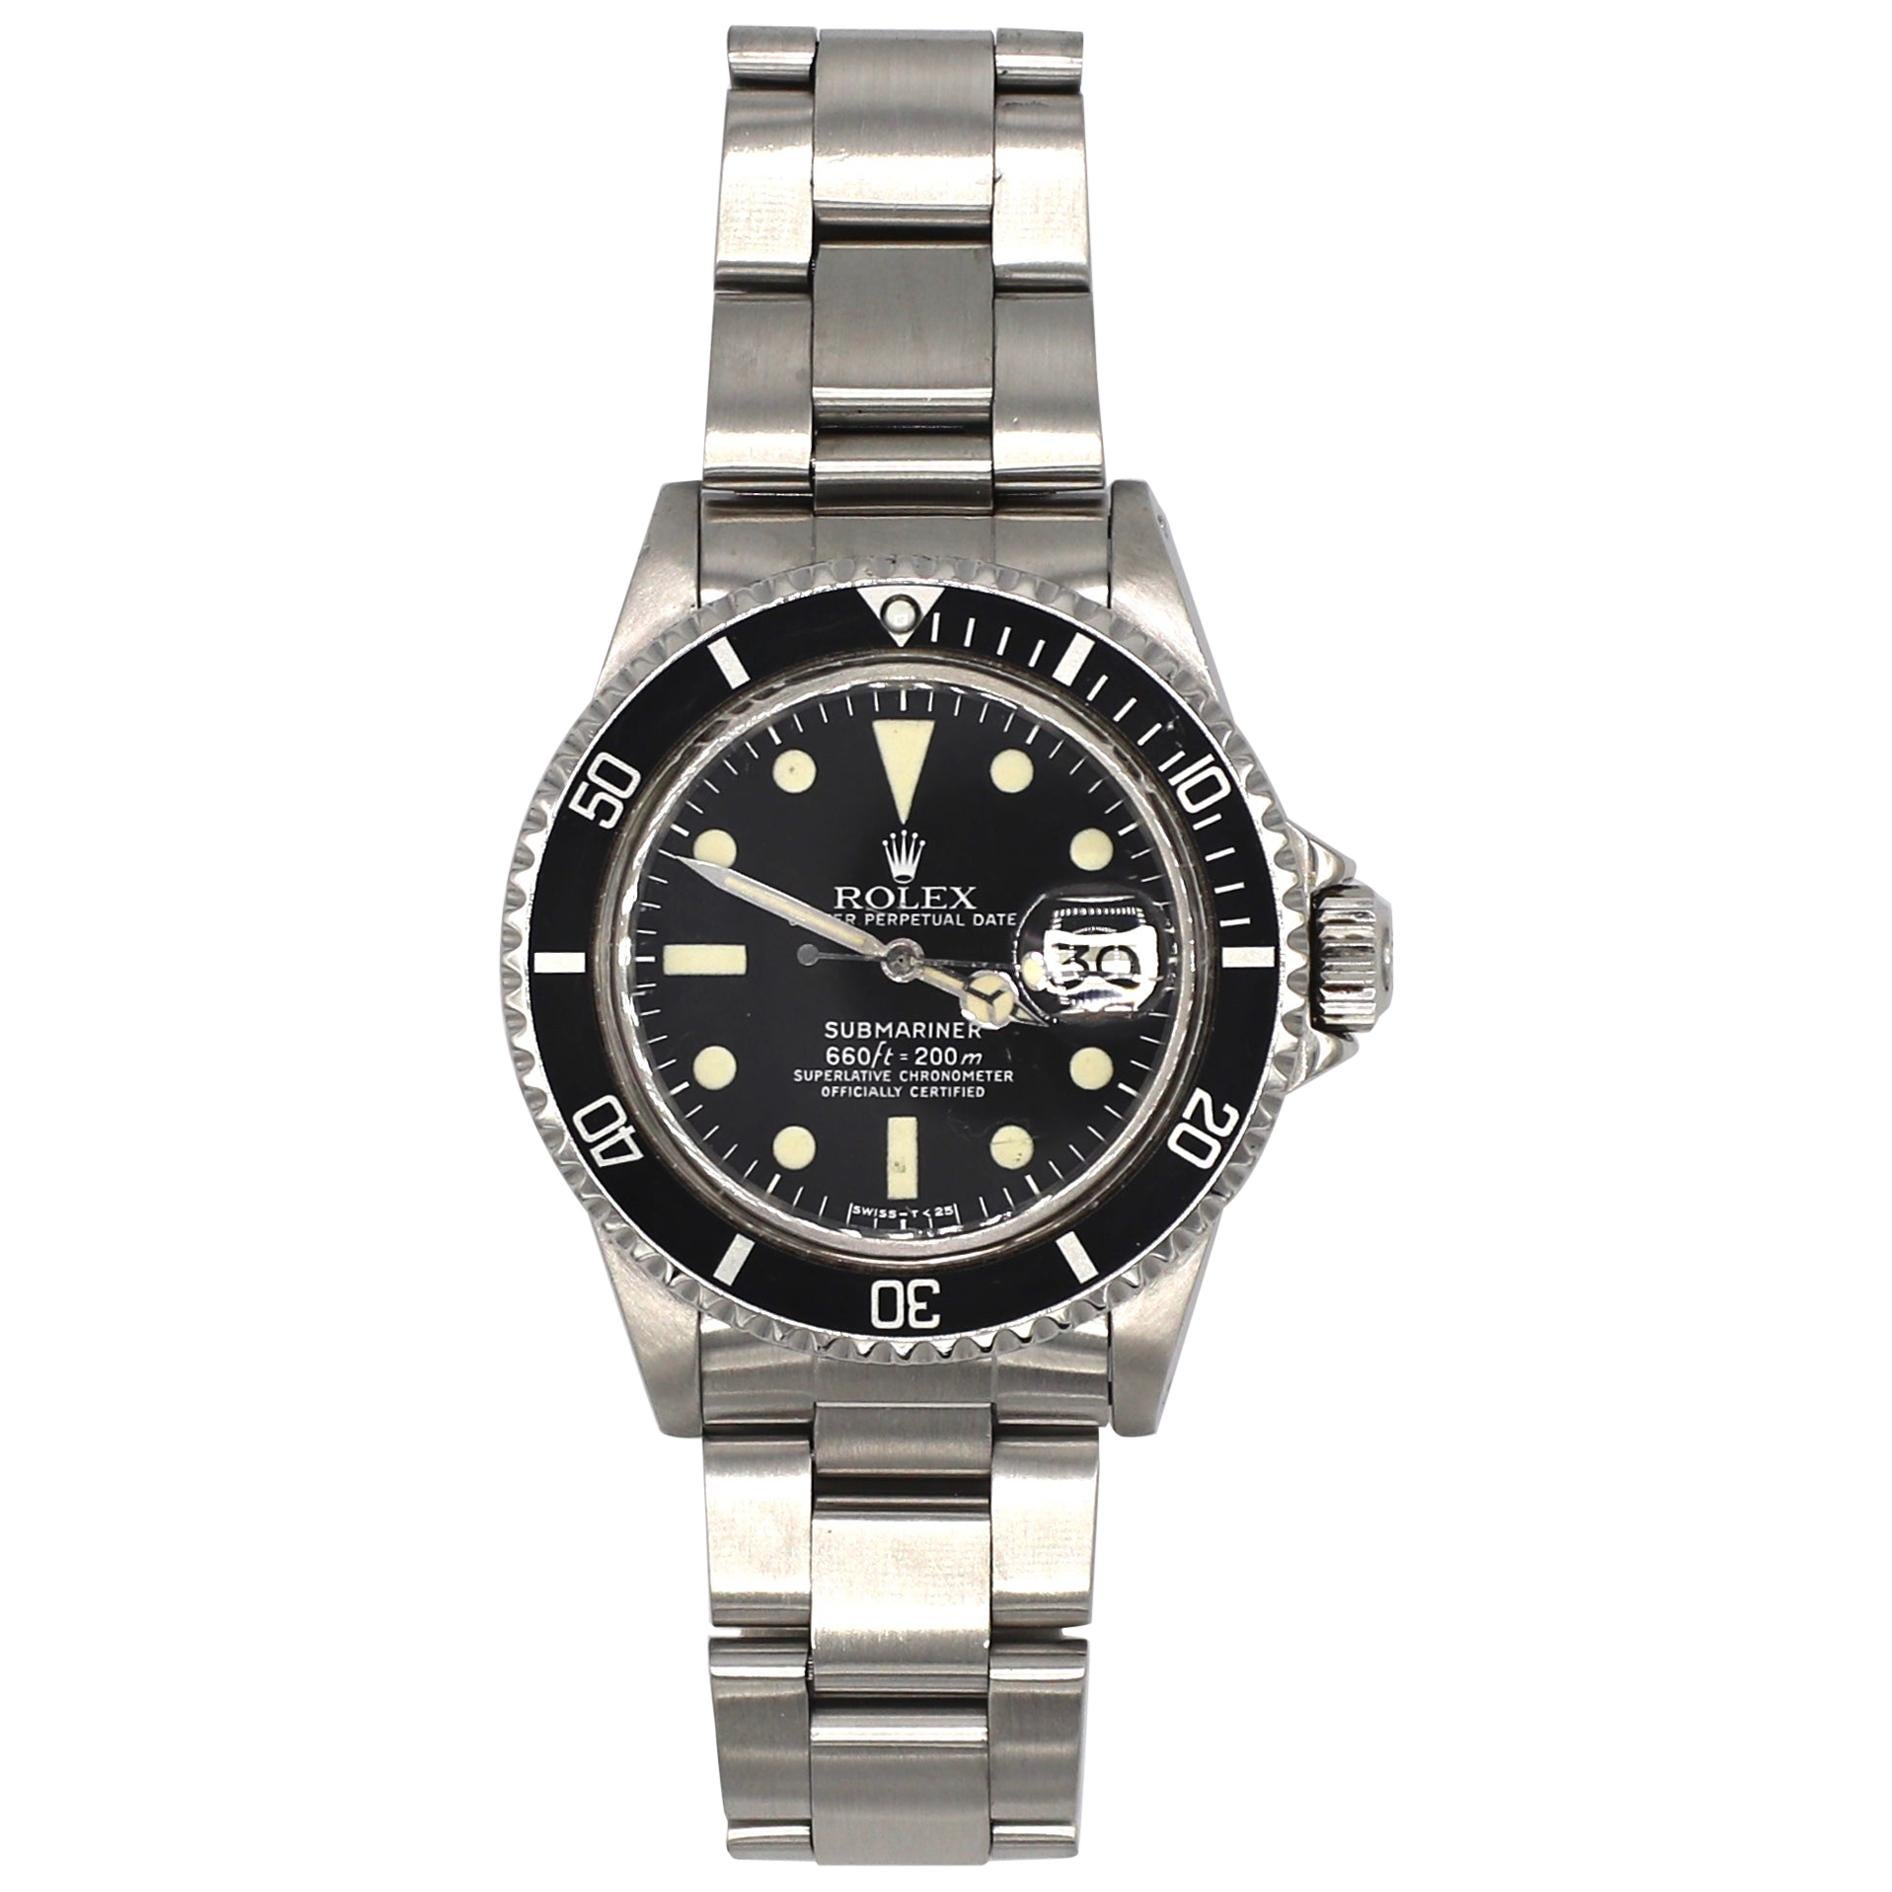 Vintage Rolex Submariner 1680 Stainless Steel Watch, circa 1979